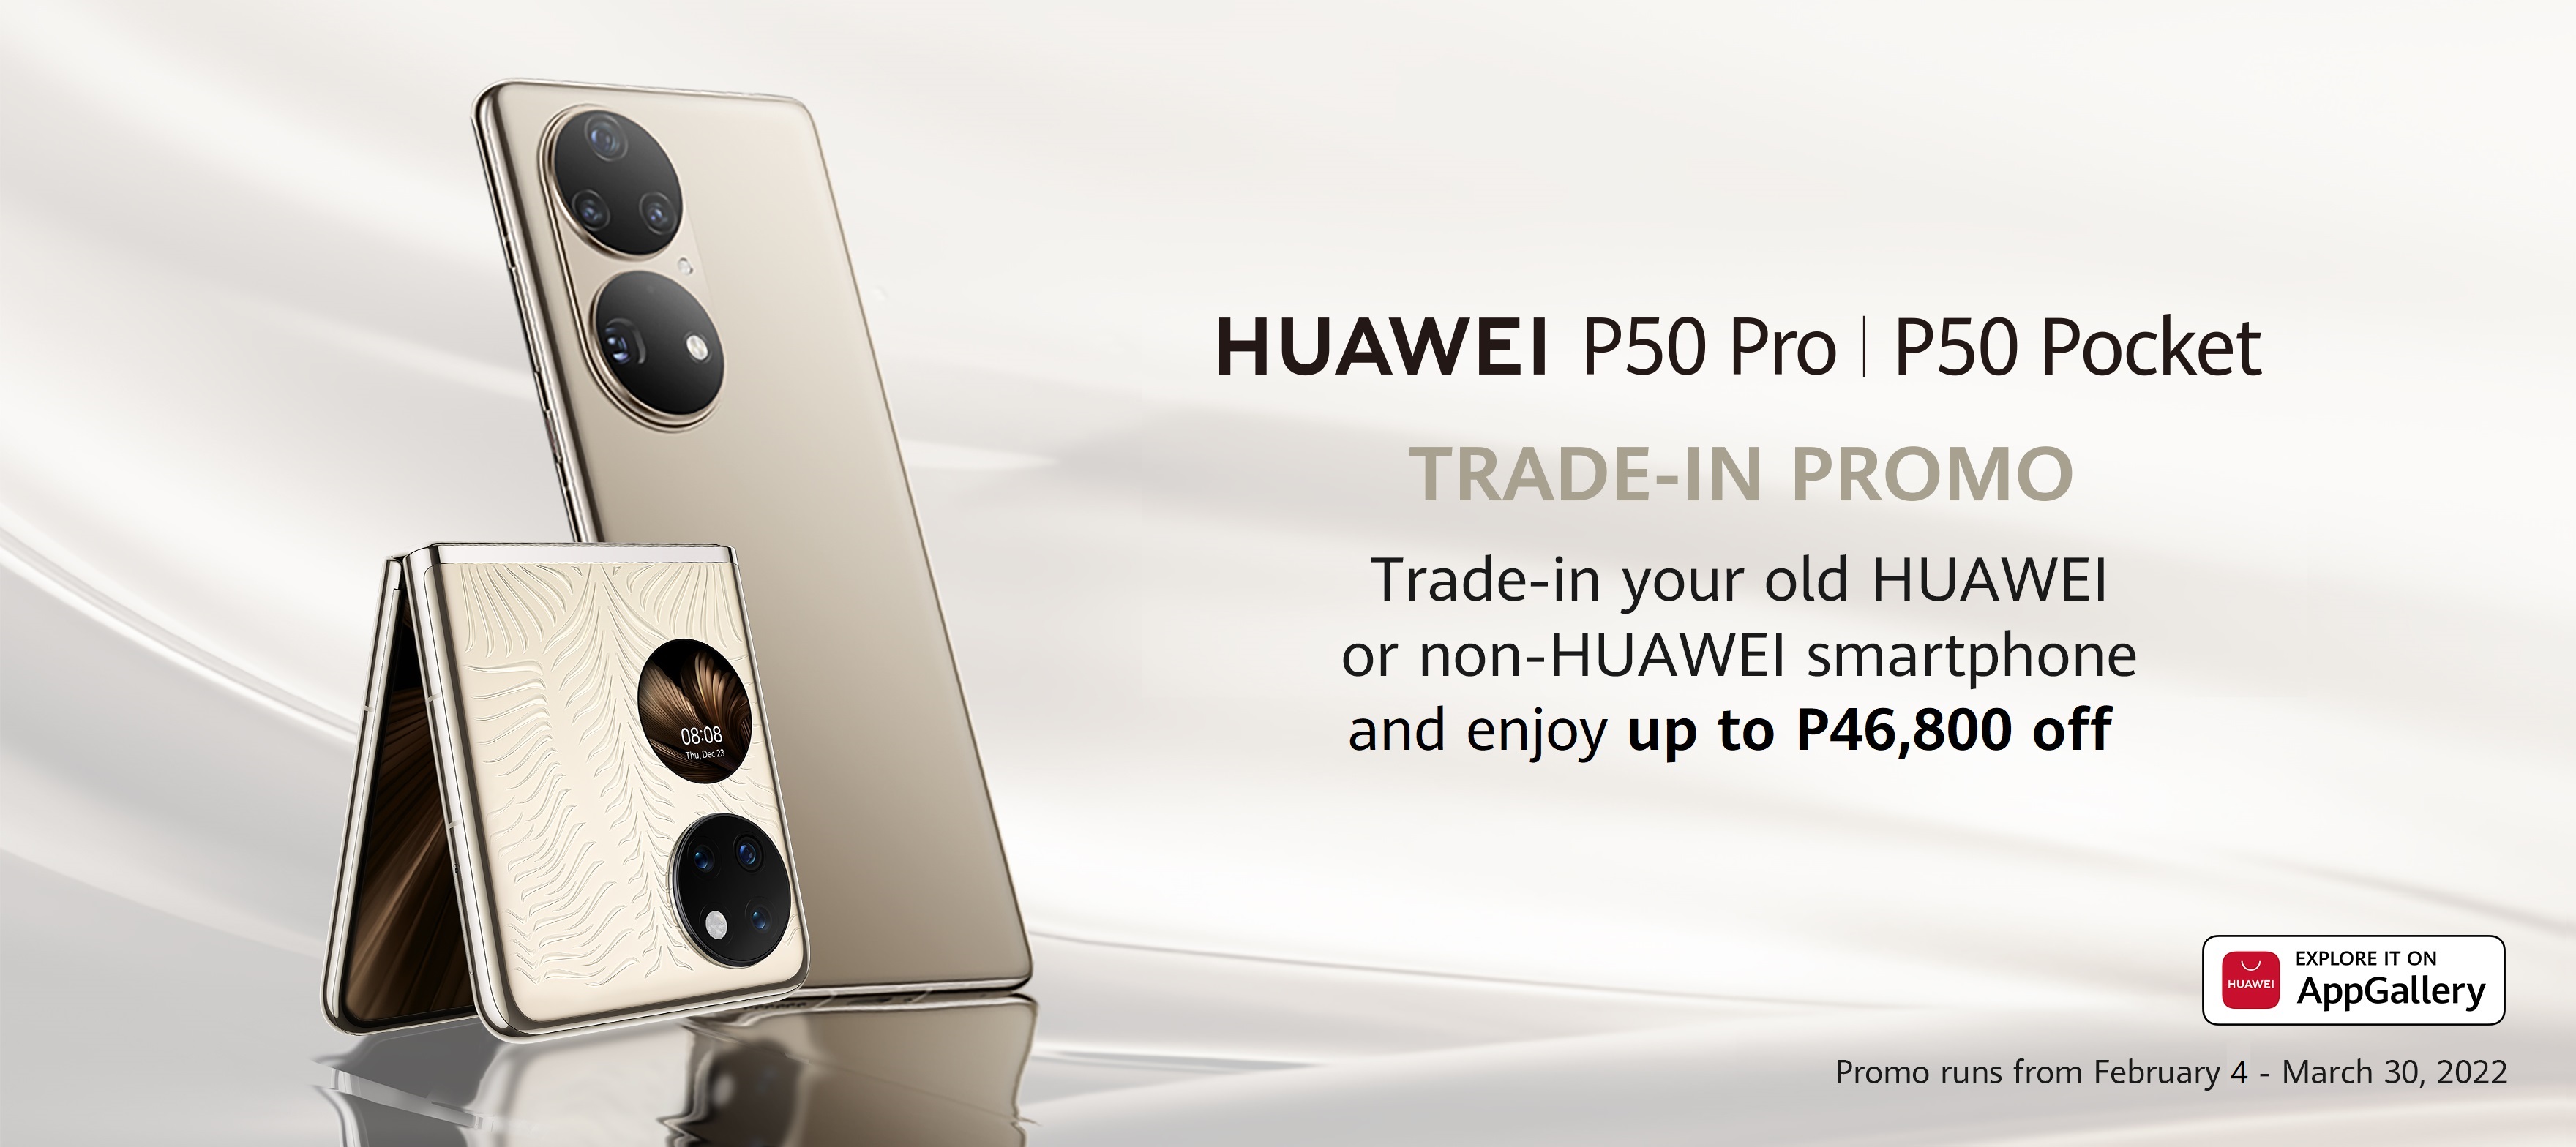 UAWEI P50 Pro & HUAWEI P50 Pocket in Huawei Store